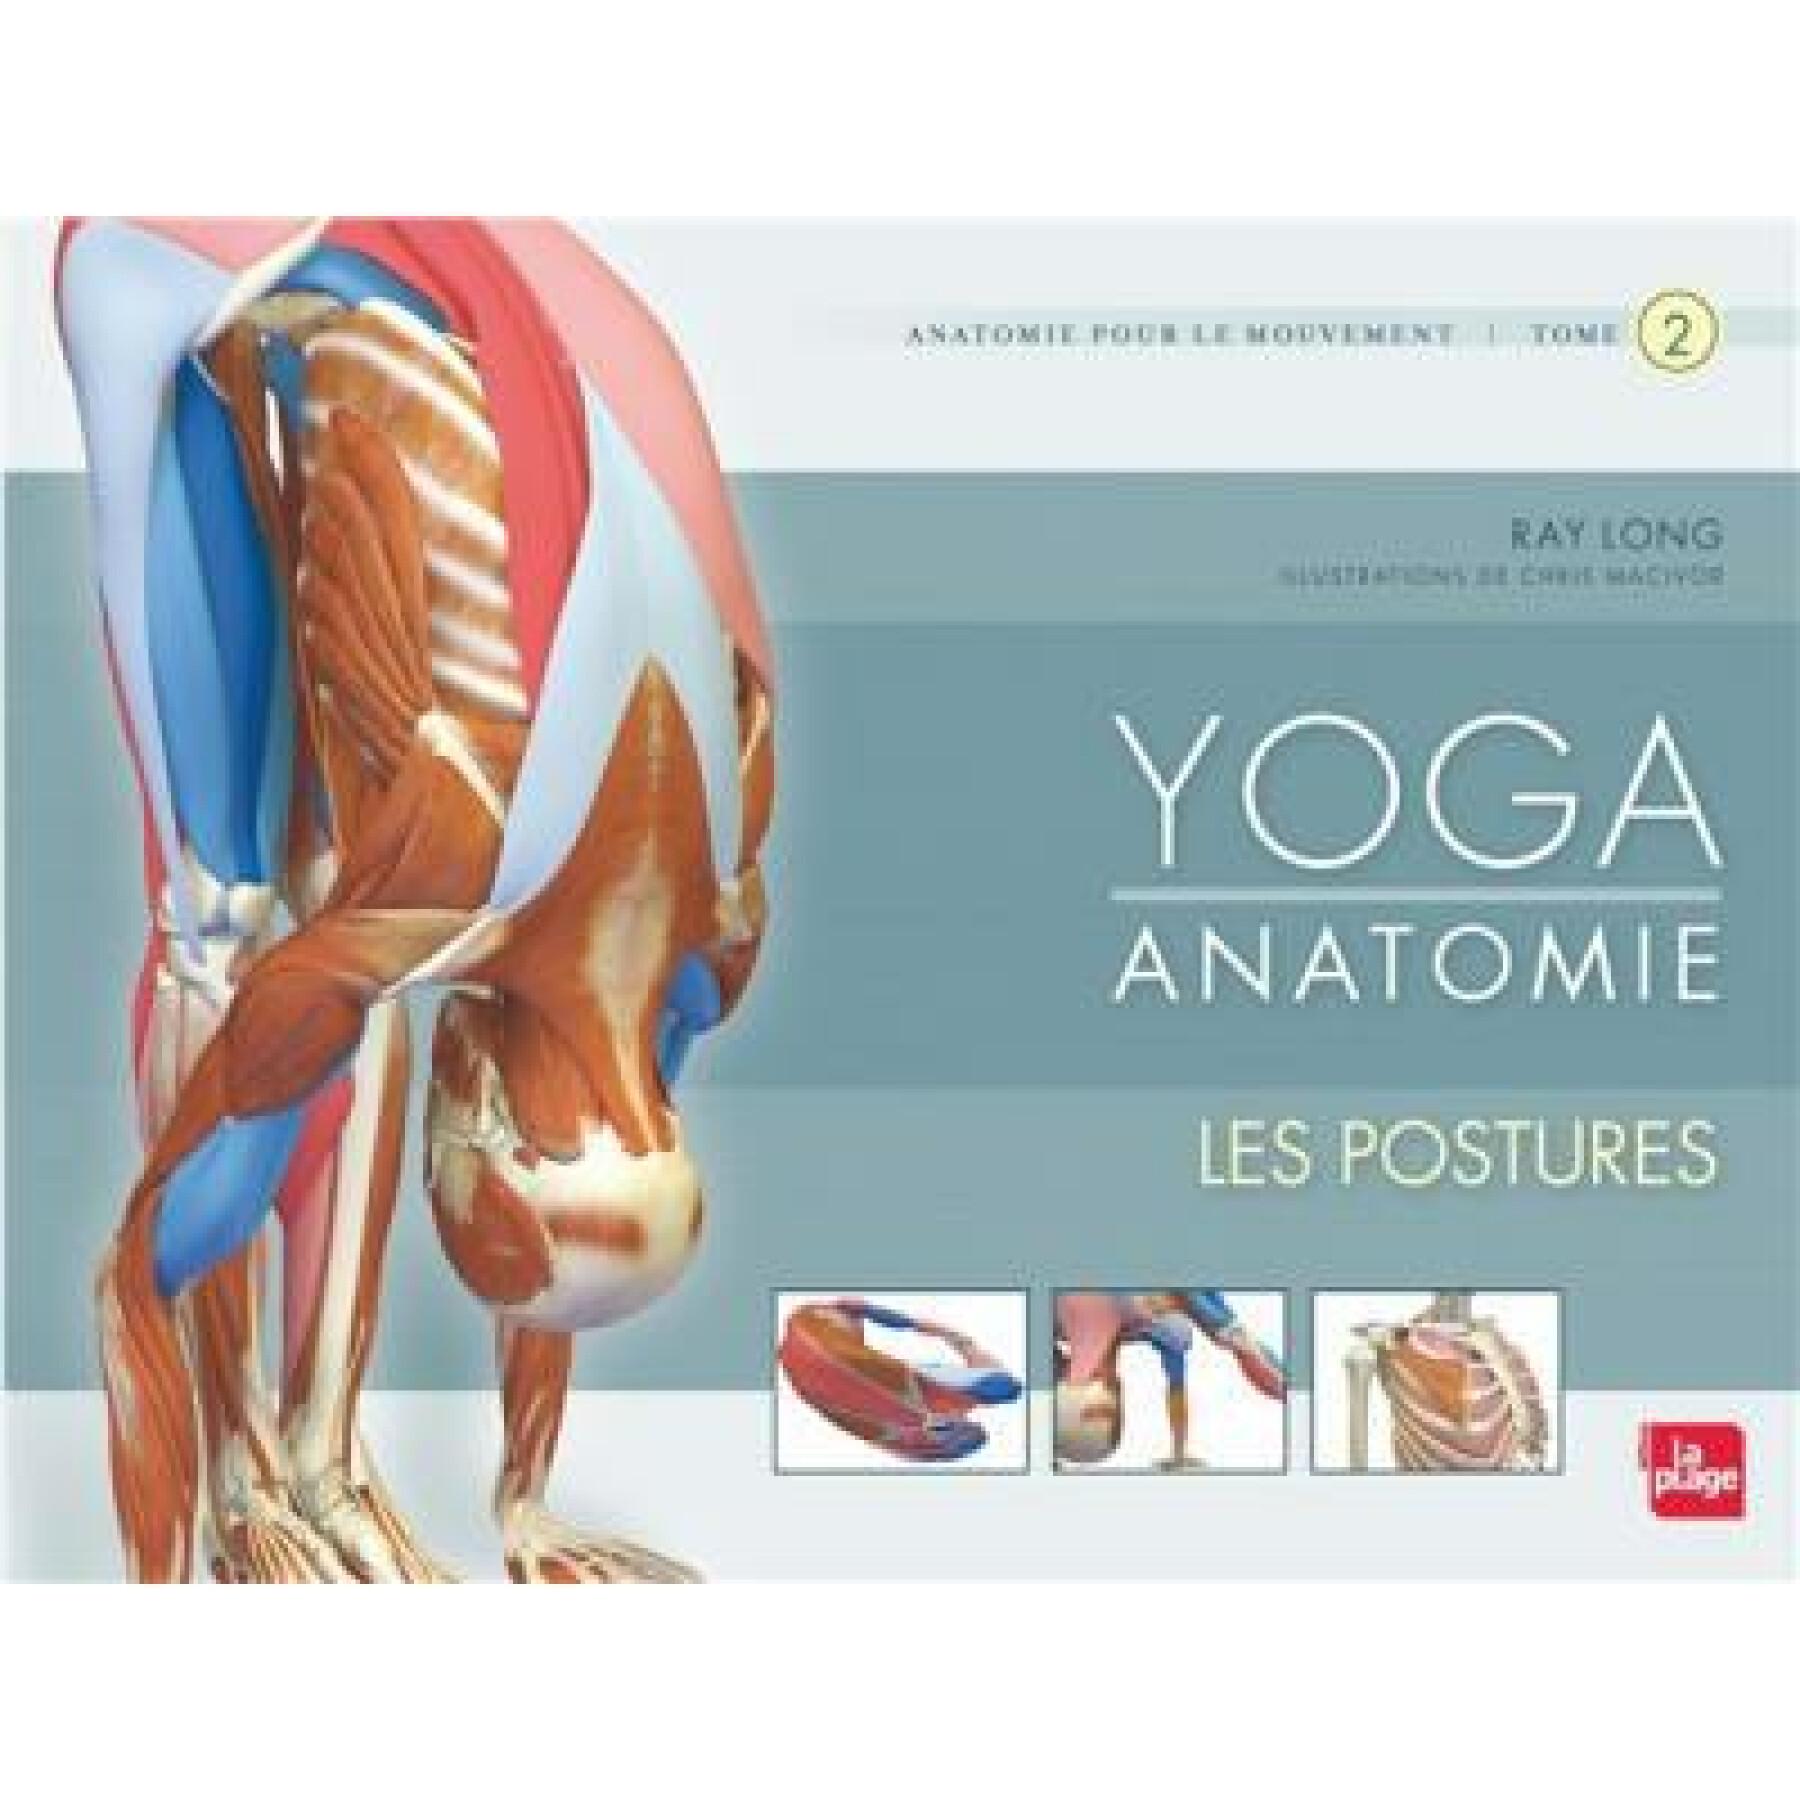 Bok yoga anatomie-les postures Hachette (Tome 2)